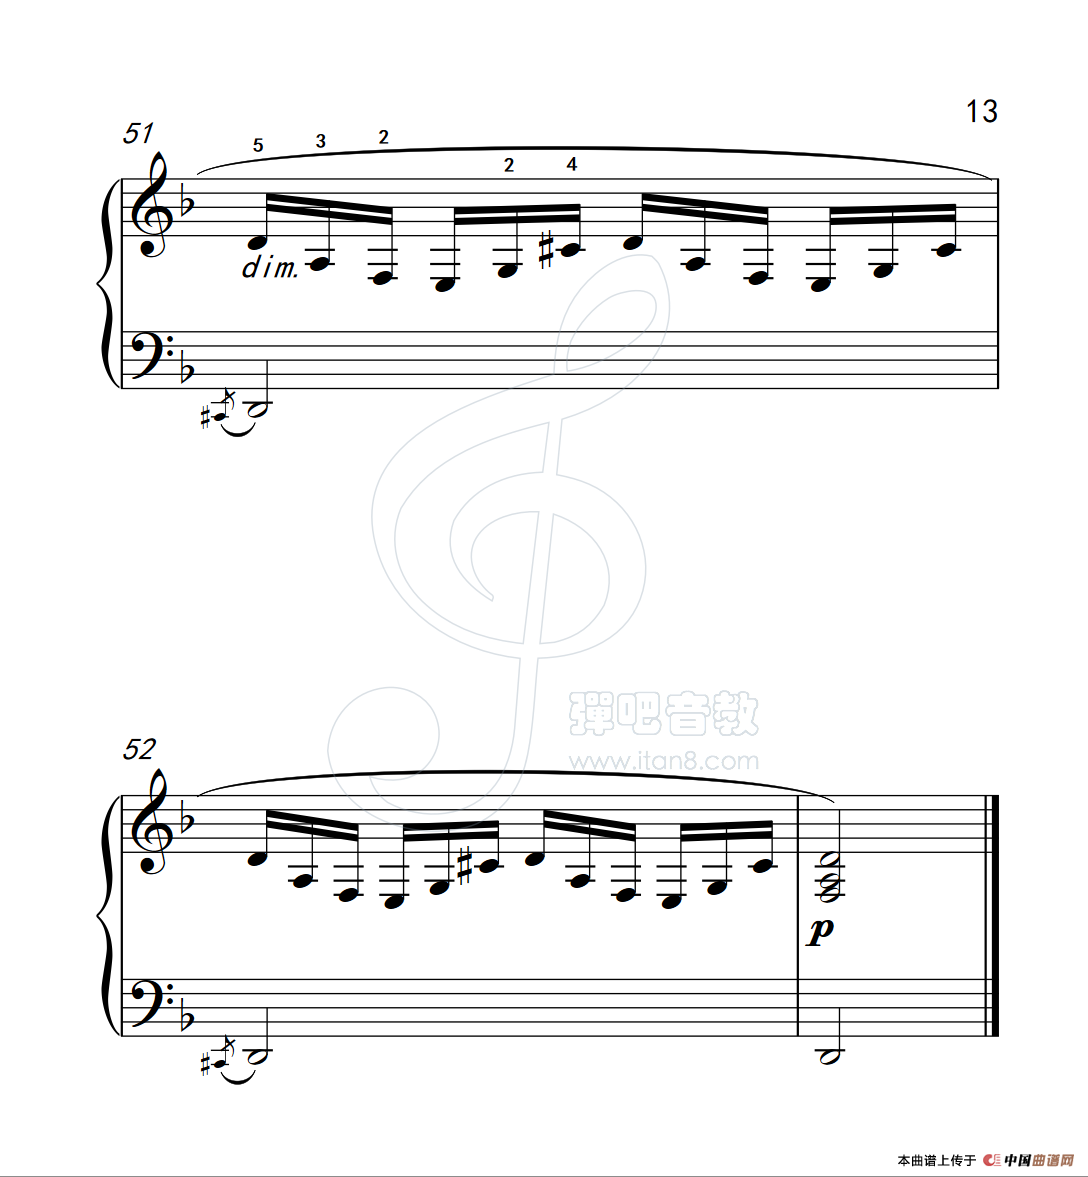 《练习曲 18》钢琴曲谱图分享